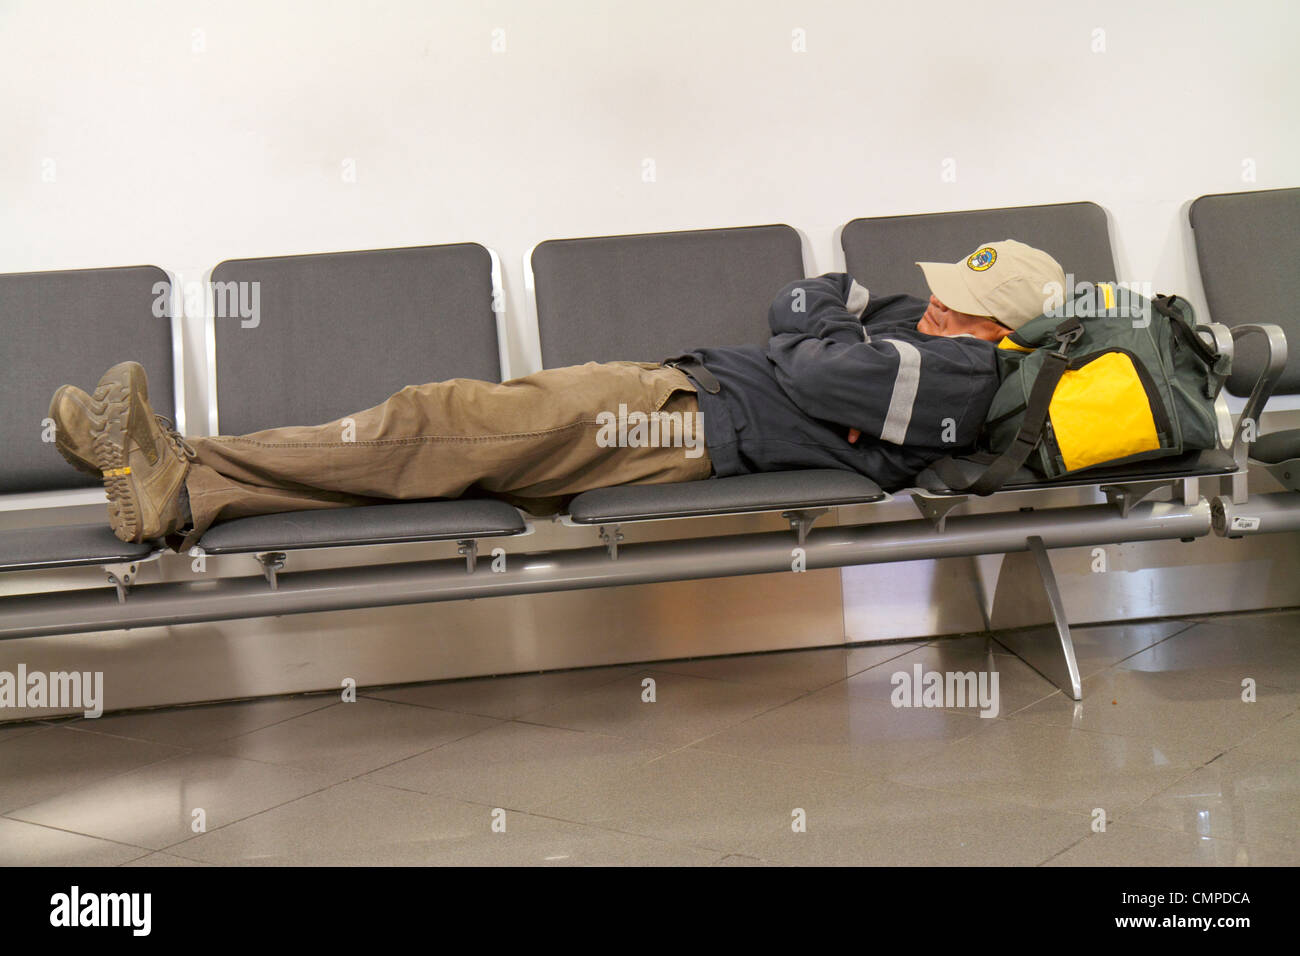 Lima Perú,Aeropuerto Internacional Jorge  Chávez,LIM,aviación,terminal,asientos,hombre hispano adultos  masculinos,durmiendo,equipaje,maleta,acros tumbados Fotografía de stock -  Alamy